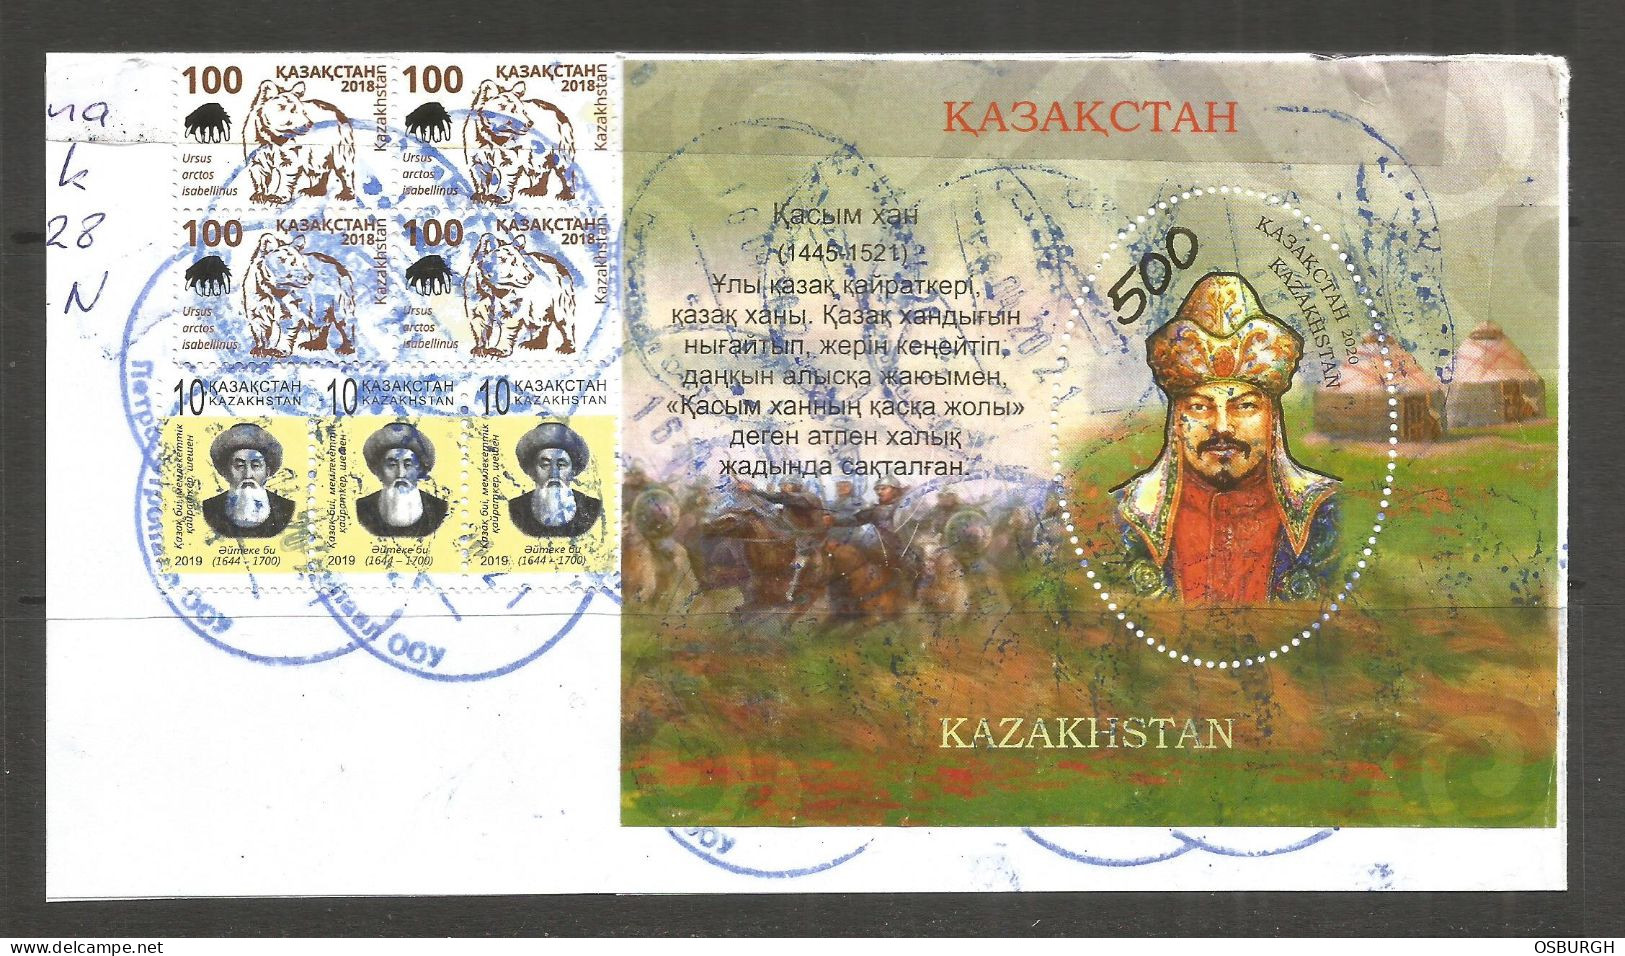 KAZAKHSTAN. 500t CAVALRY MINI SHEET USED ON PIECE. - Kazakhstan